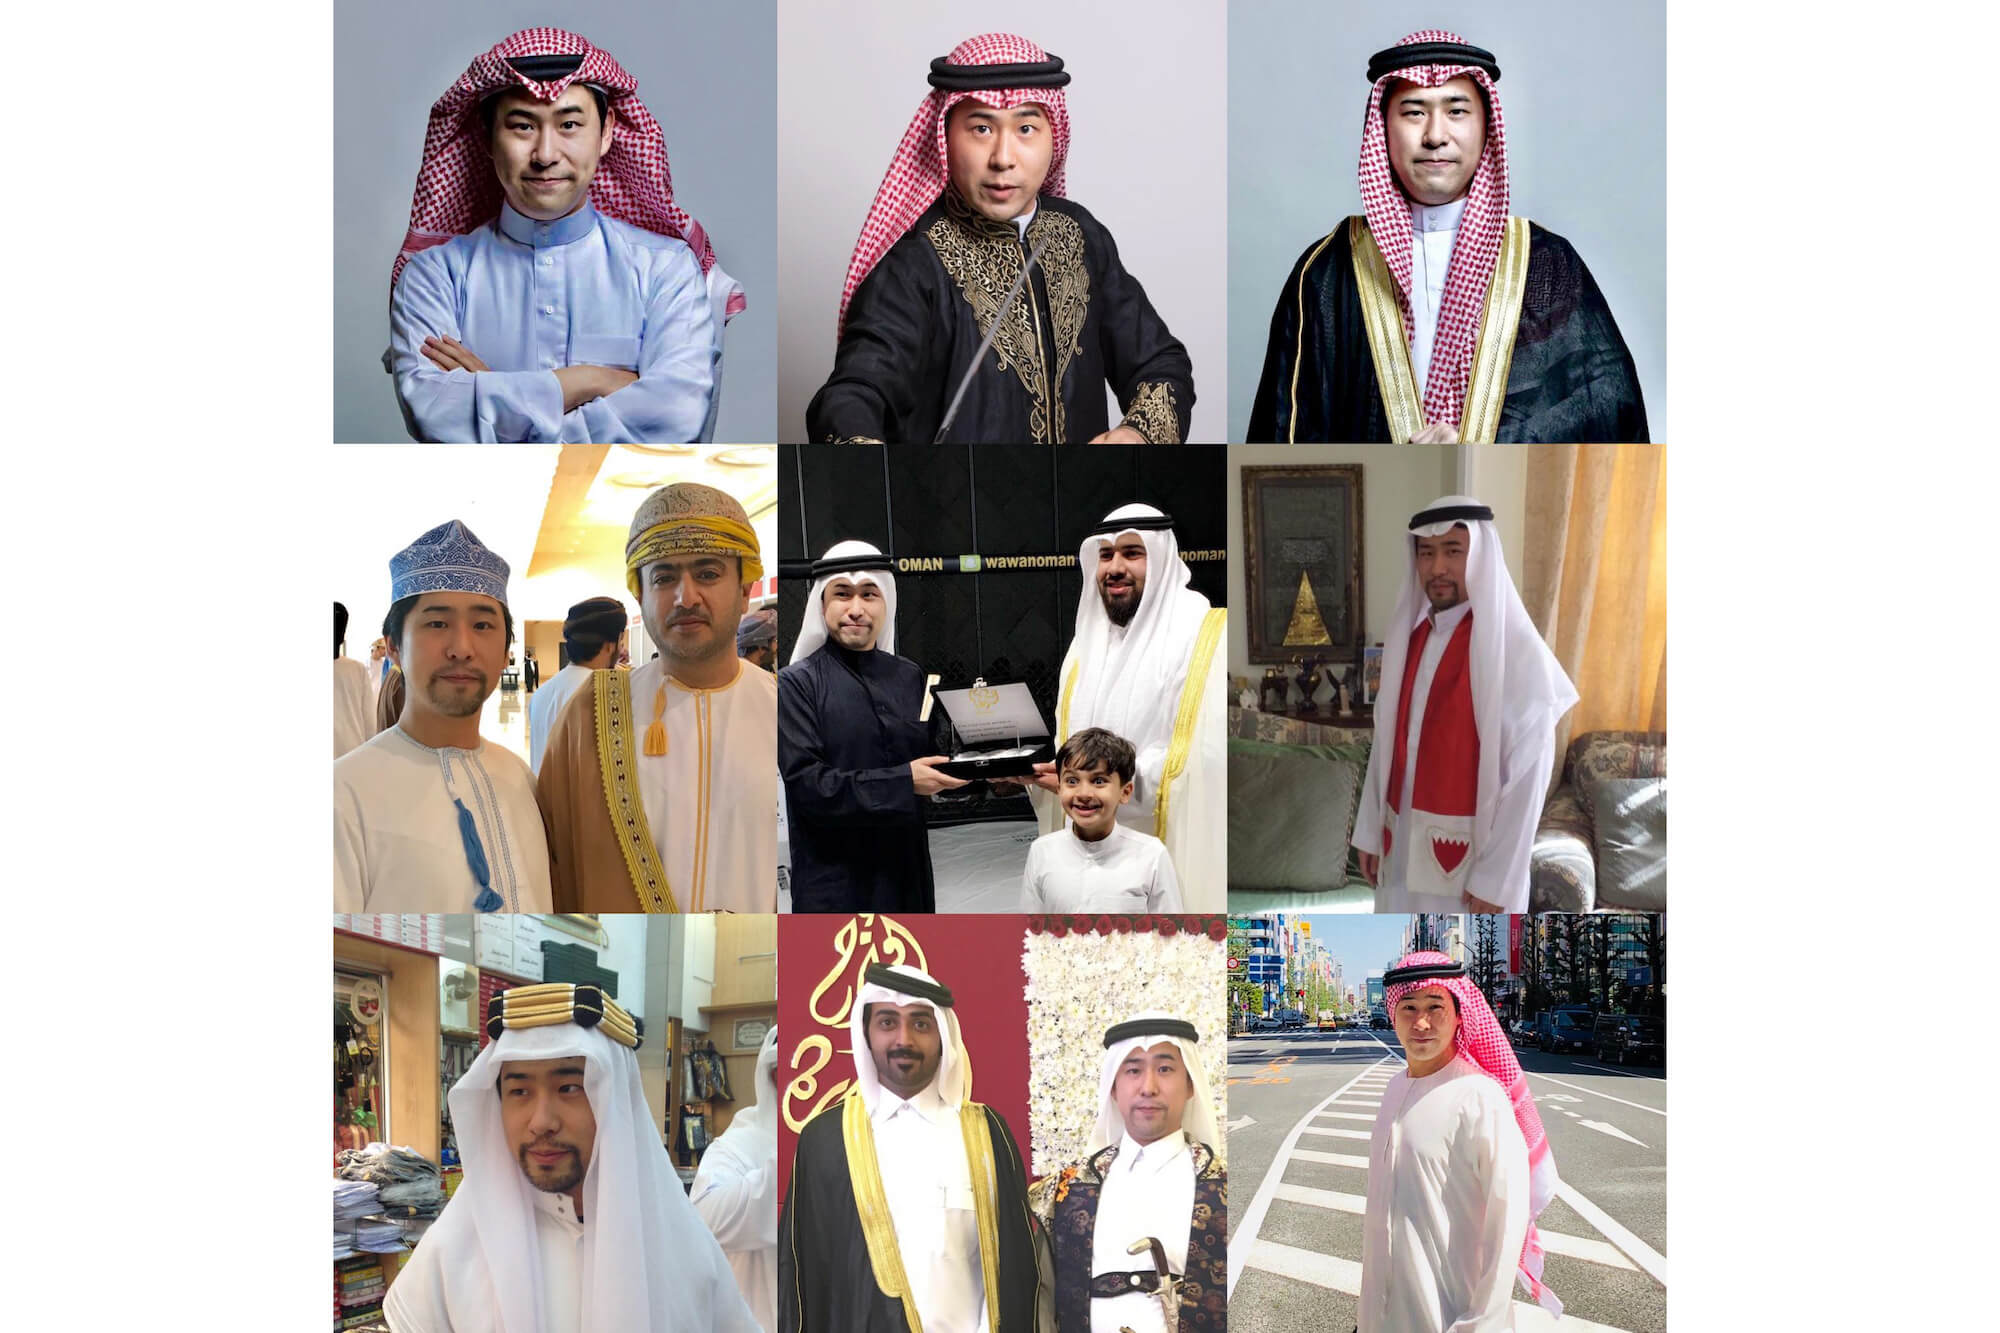 中東の民族衣装の差異と着用法 鷹鳥屋明 遅いインターネット